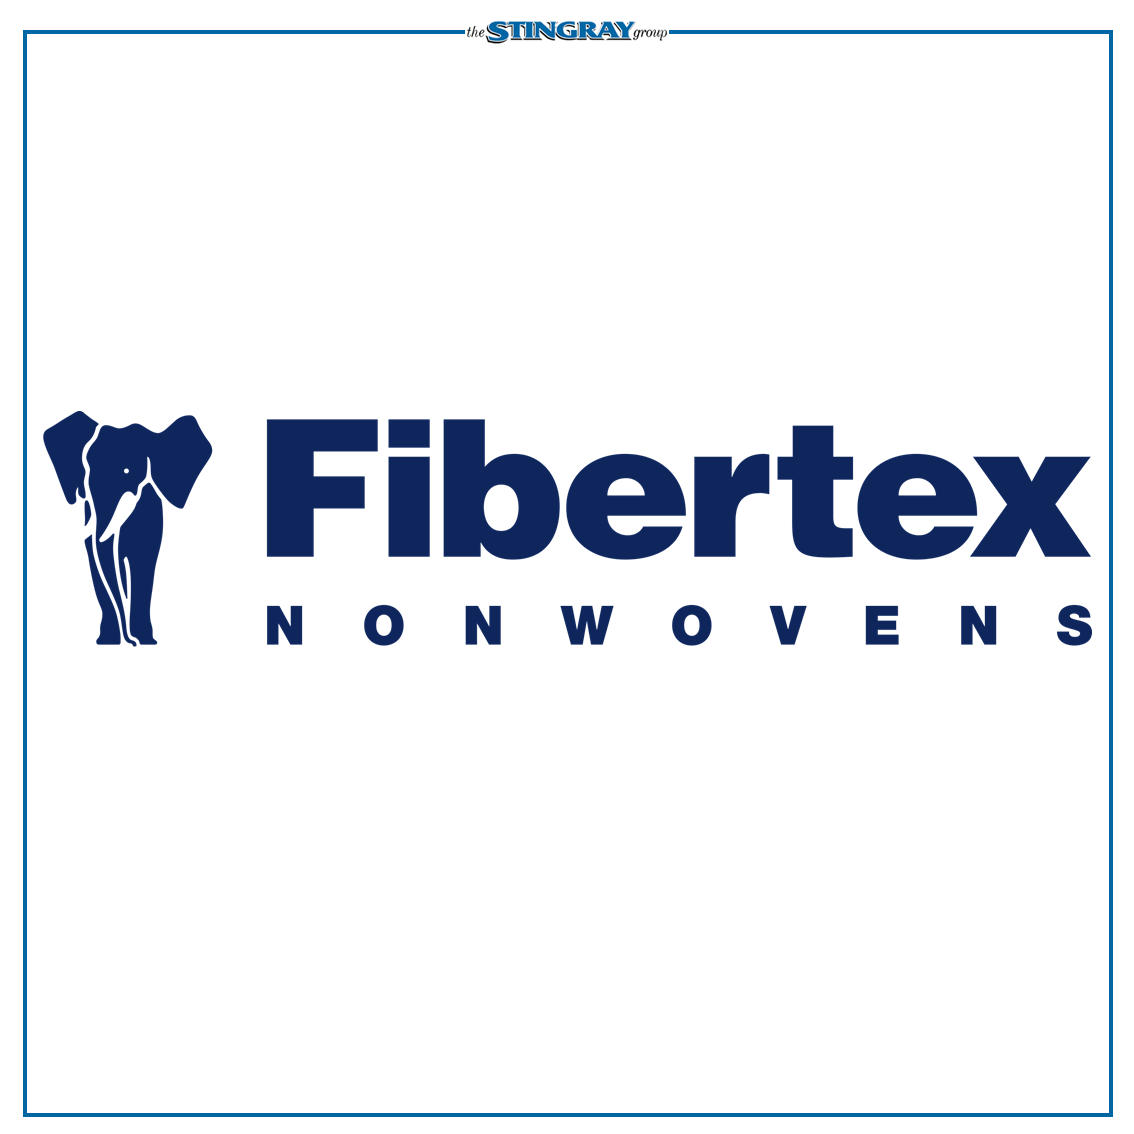 STINGRAY - Fibretex Catalogue